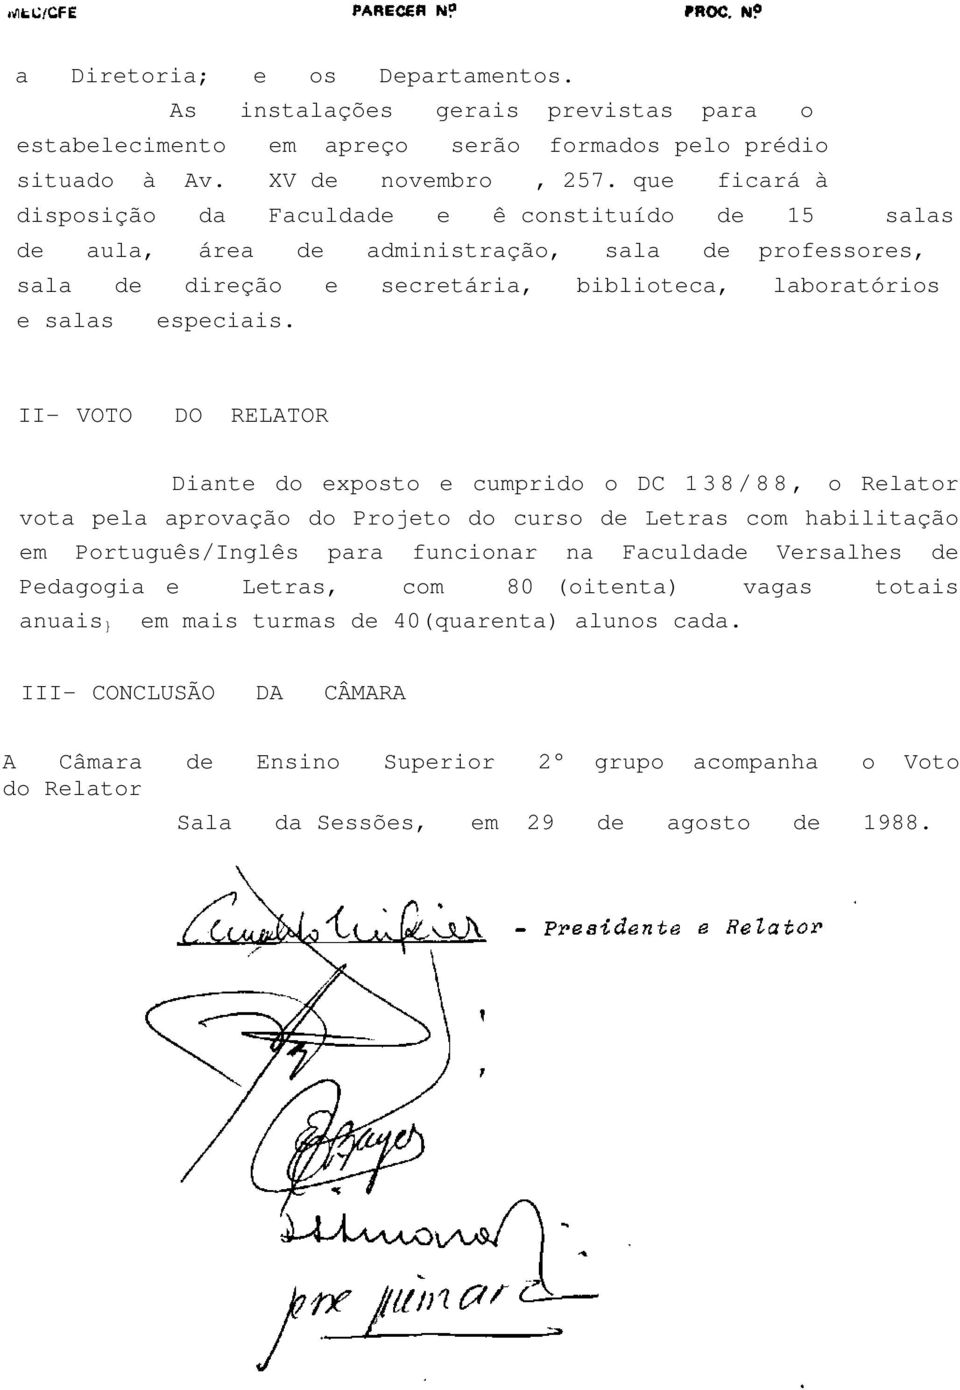 II- VOTO DO RELATOR Diante do exposto e cumprido o DC 138/88, o Relator vota pela aprovação do Projeto do curso de Letras com habilitação em Português/Inglês para funcionar na Faculdade Versalhes